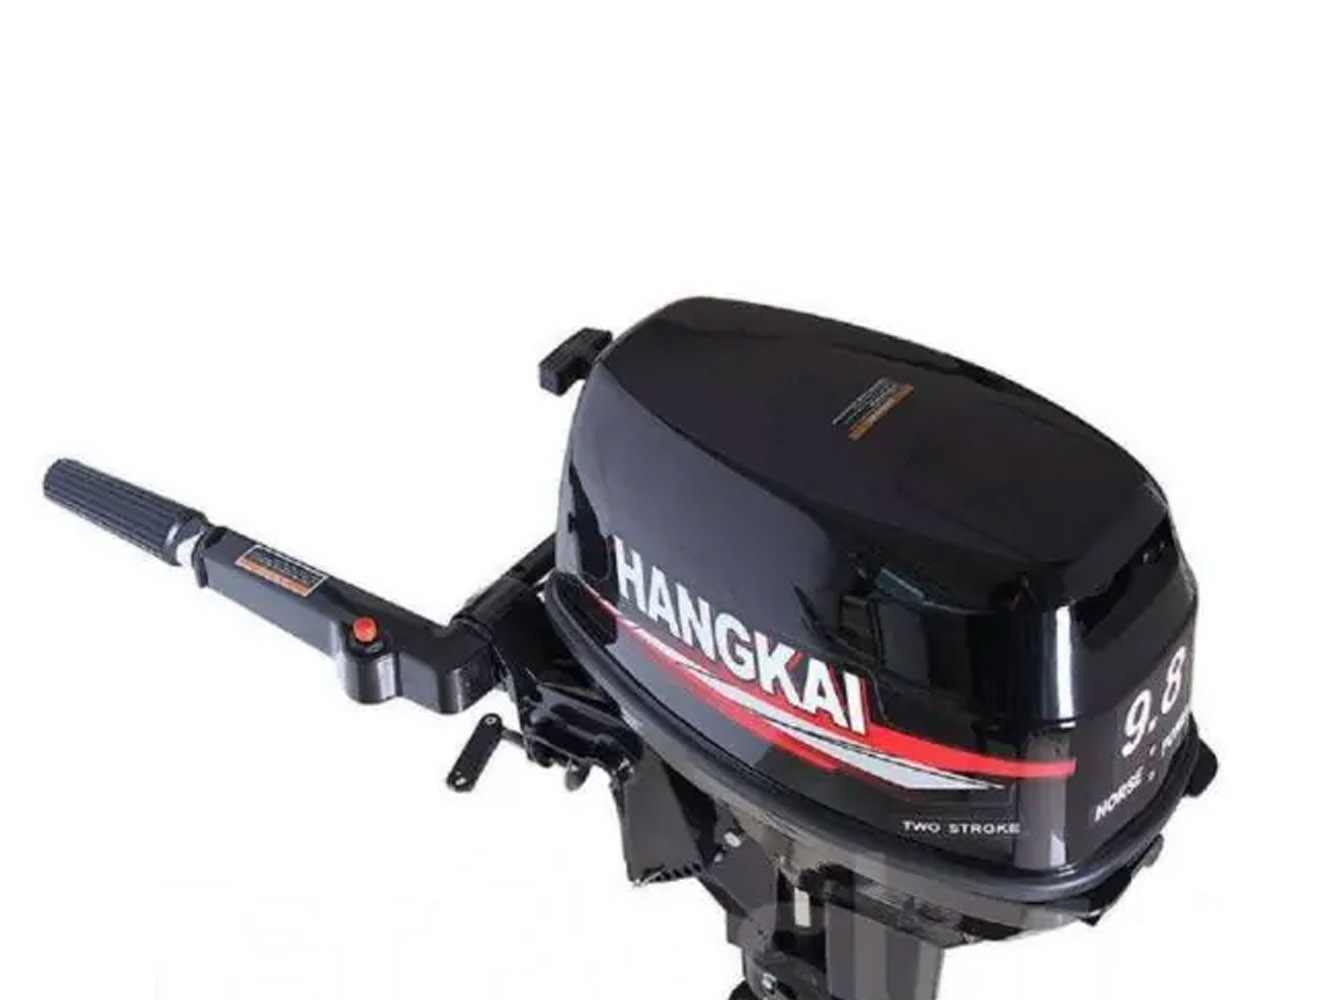 Мотор ханкай 9.8. Лодочный мотор Hangkai 9.8. Лодочный мотор Hangkai m9.8. Лодочный мотор Ханкай 9.8. Лодочный мотор Hangkai m9.9HP.